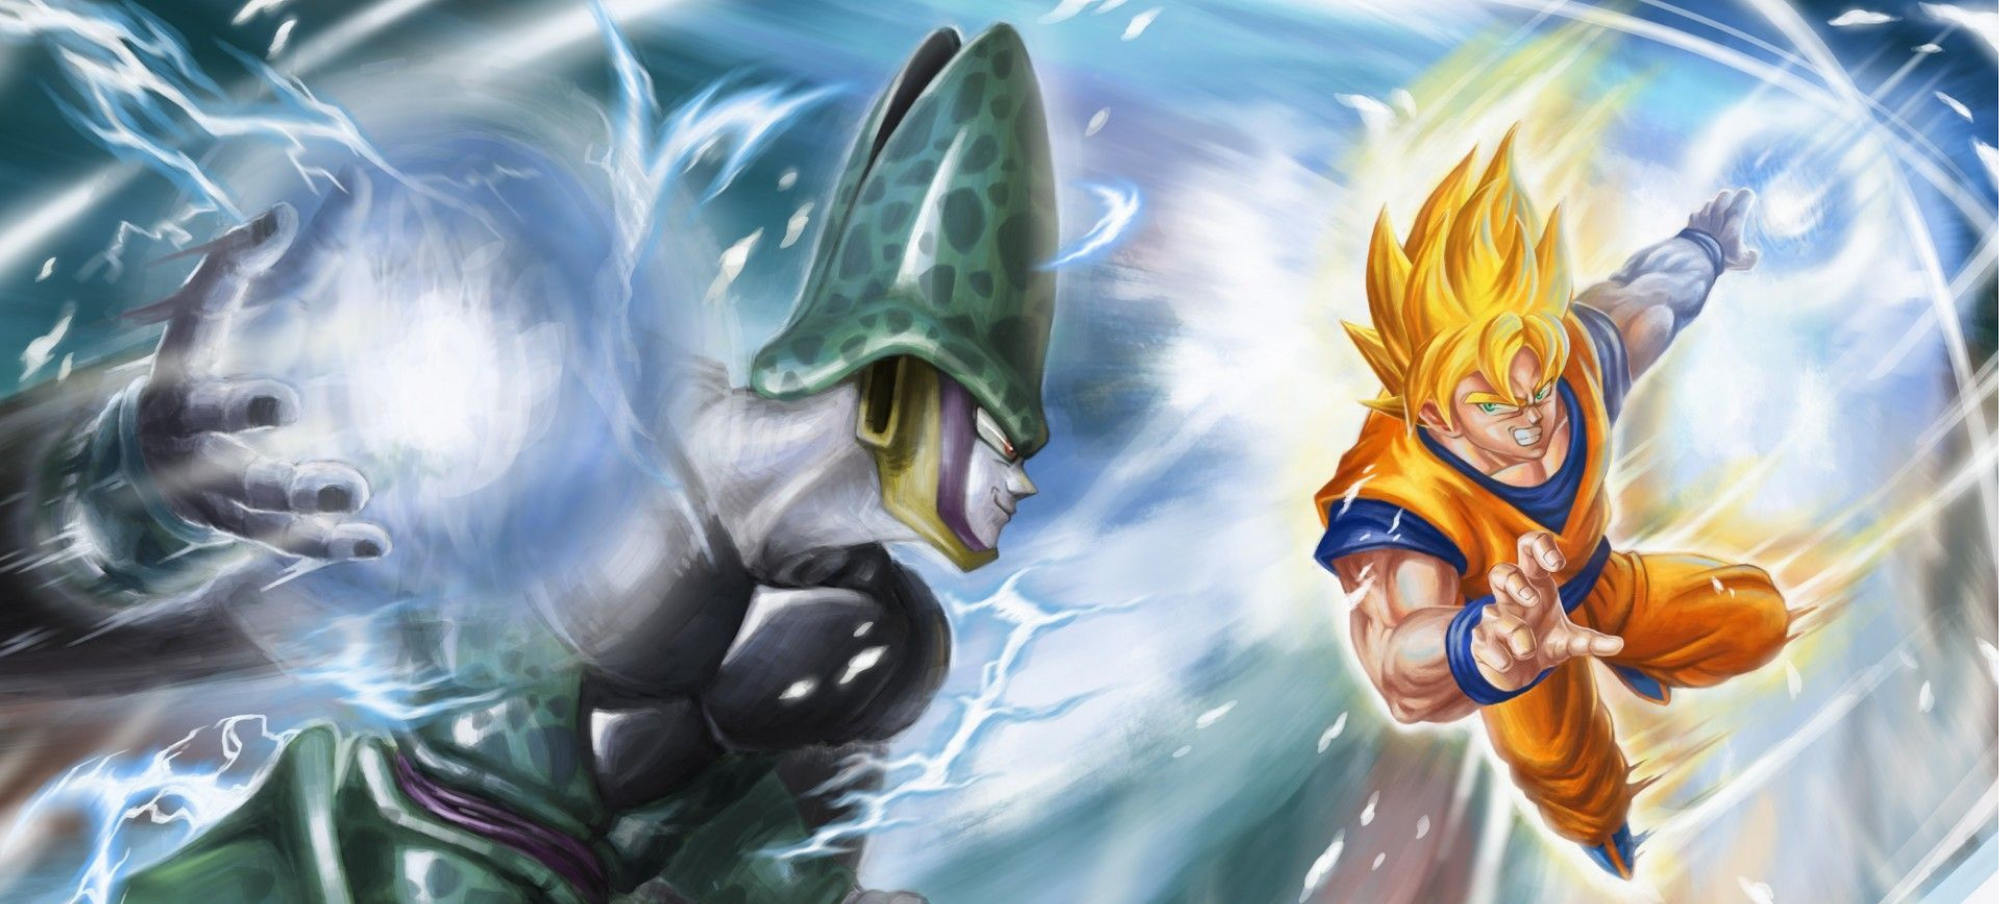 Goku vs cell1.png